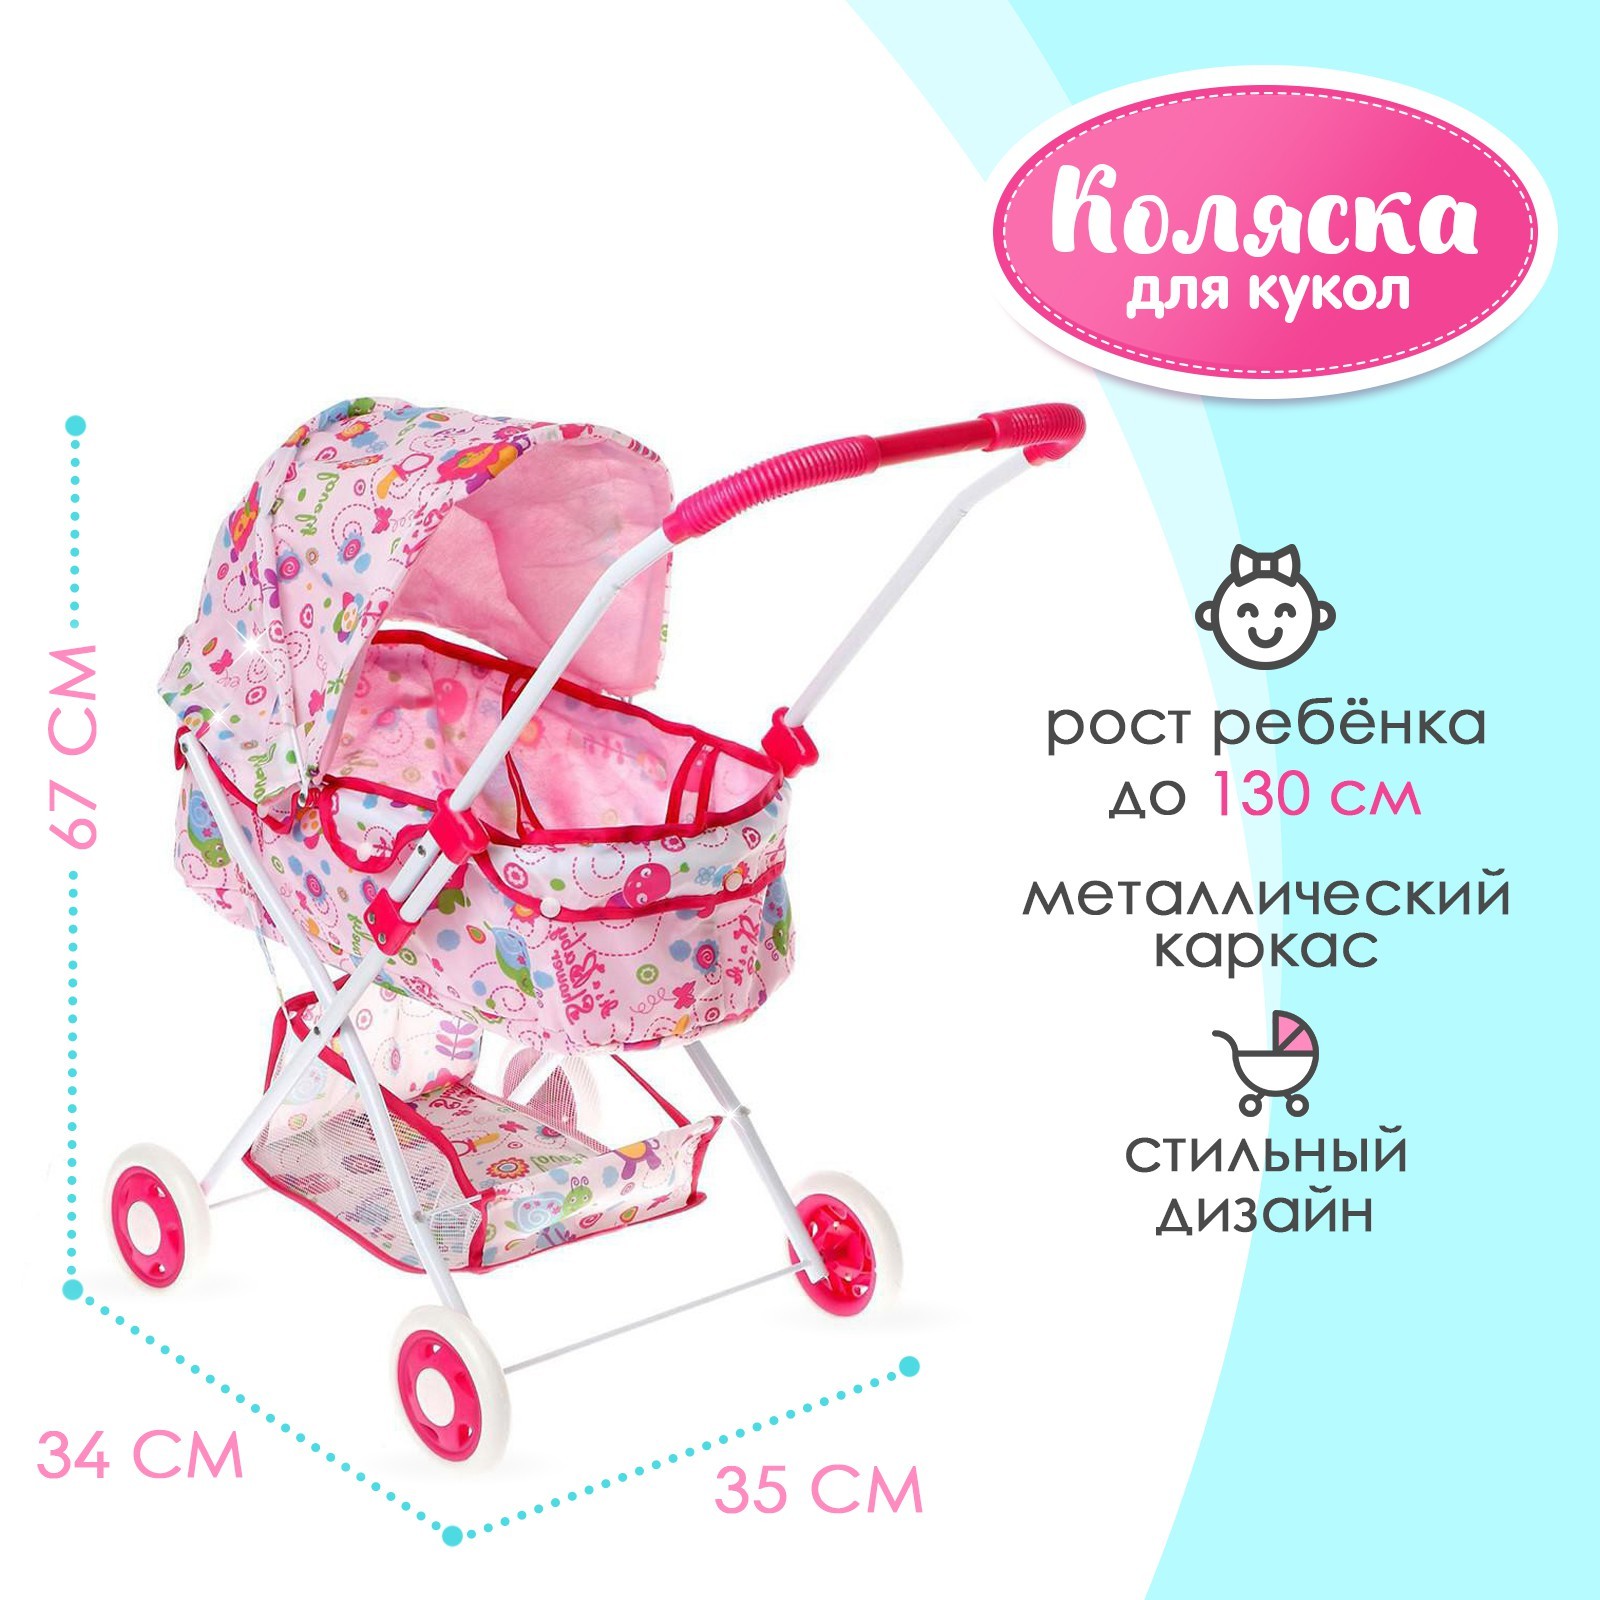 Коляски для кукол купить недорого в Киеве и Одессе - Optclub